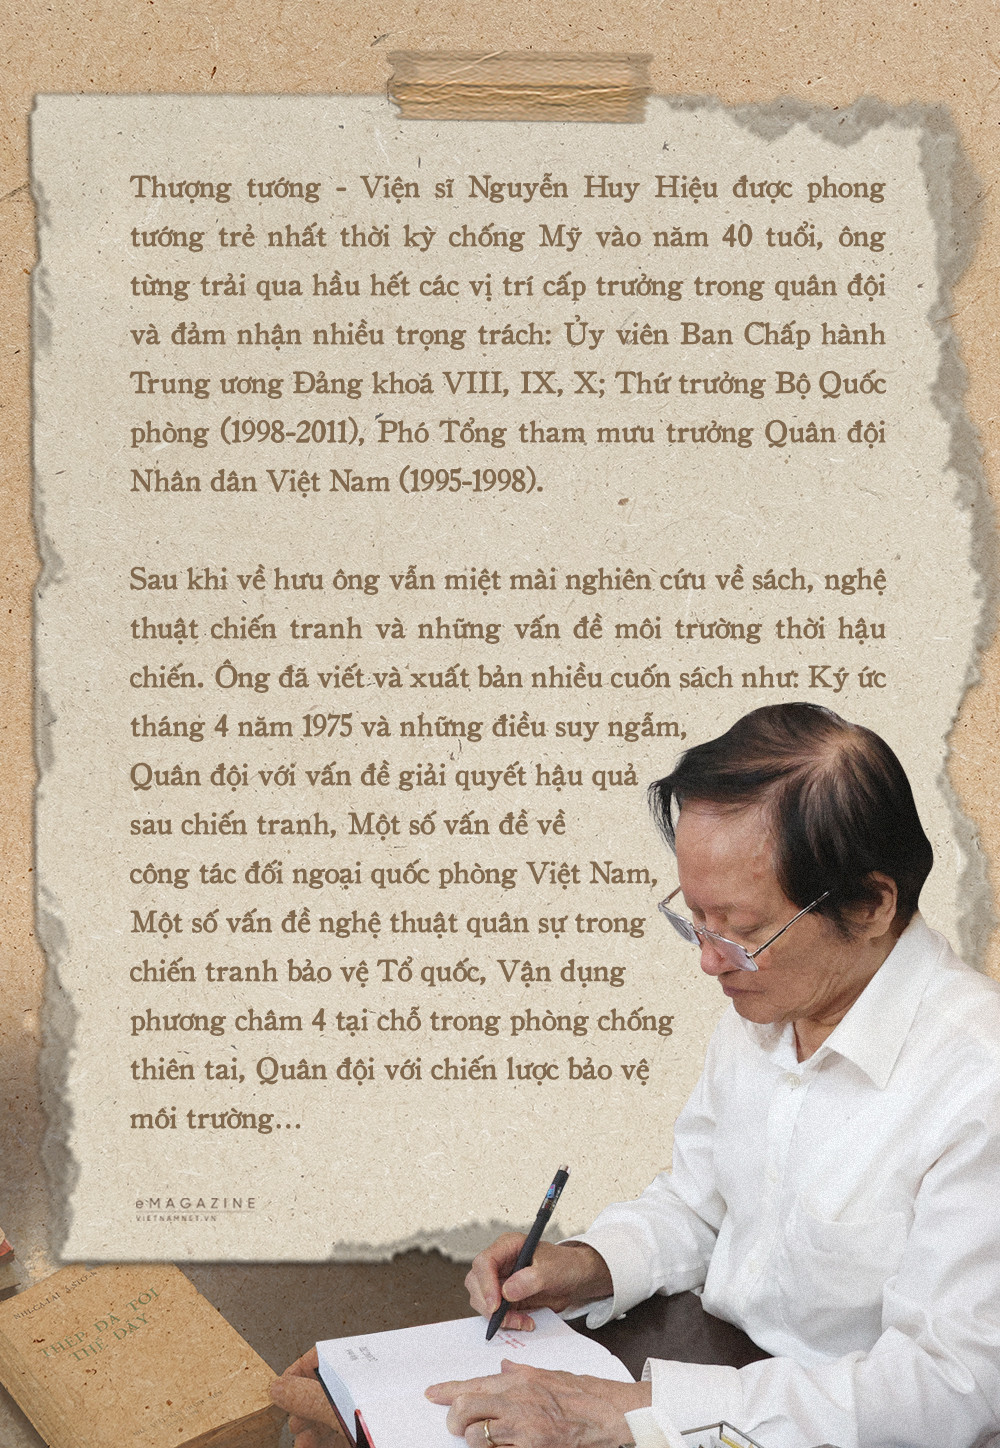 Thượng tướng Nguyễn Huy Hiệu: 'Tôi không có tài sản gì, chỉ có những cuốn sách'